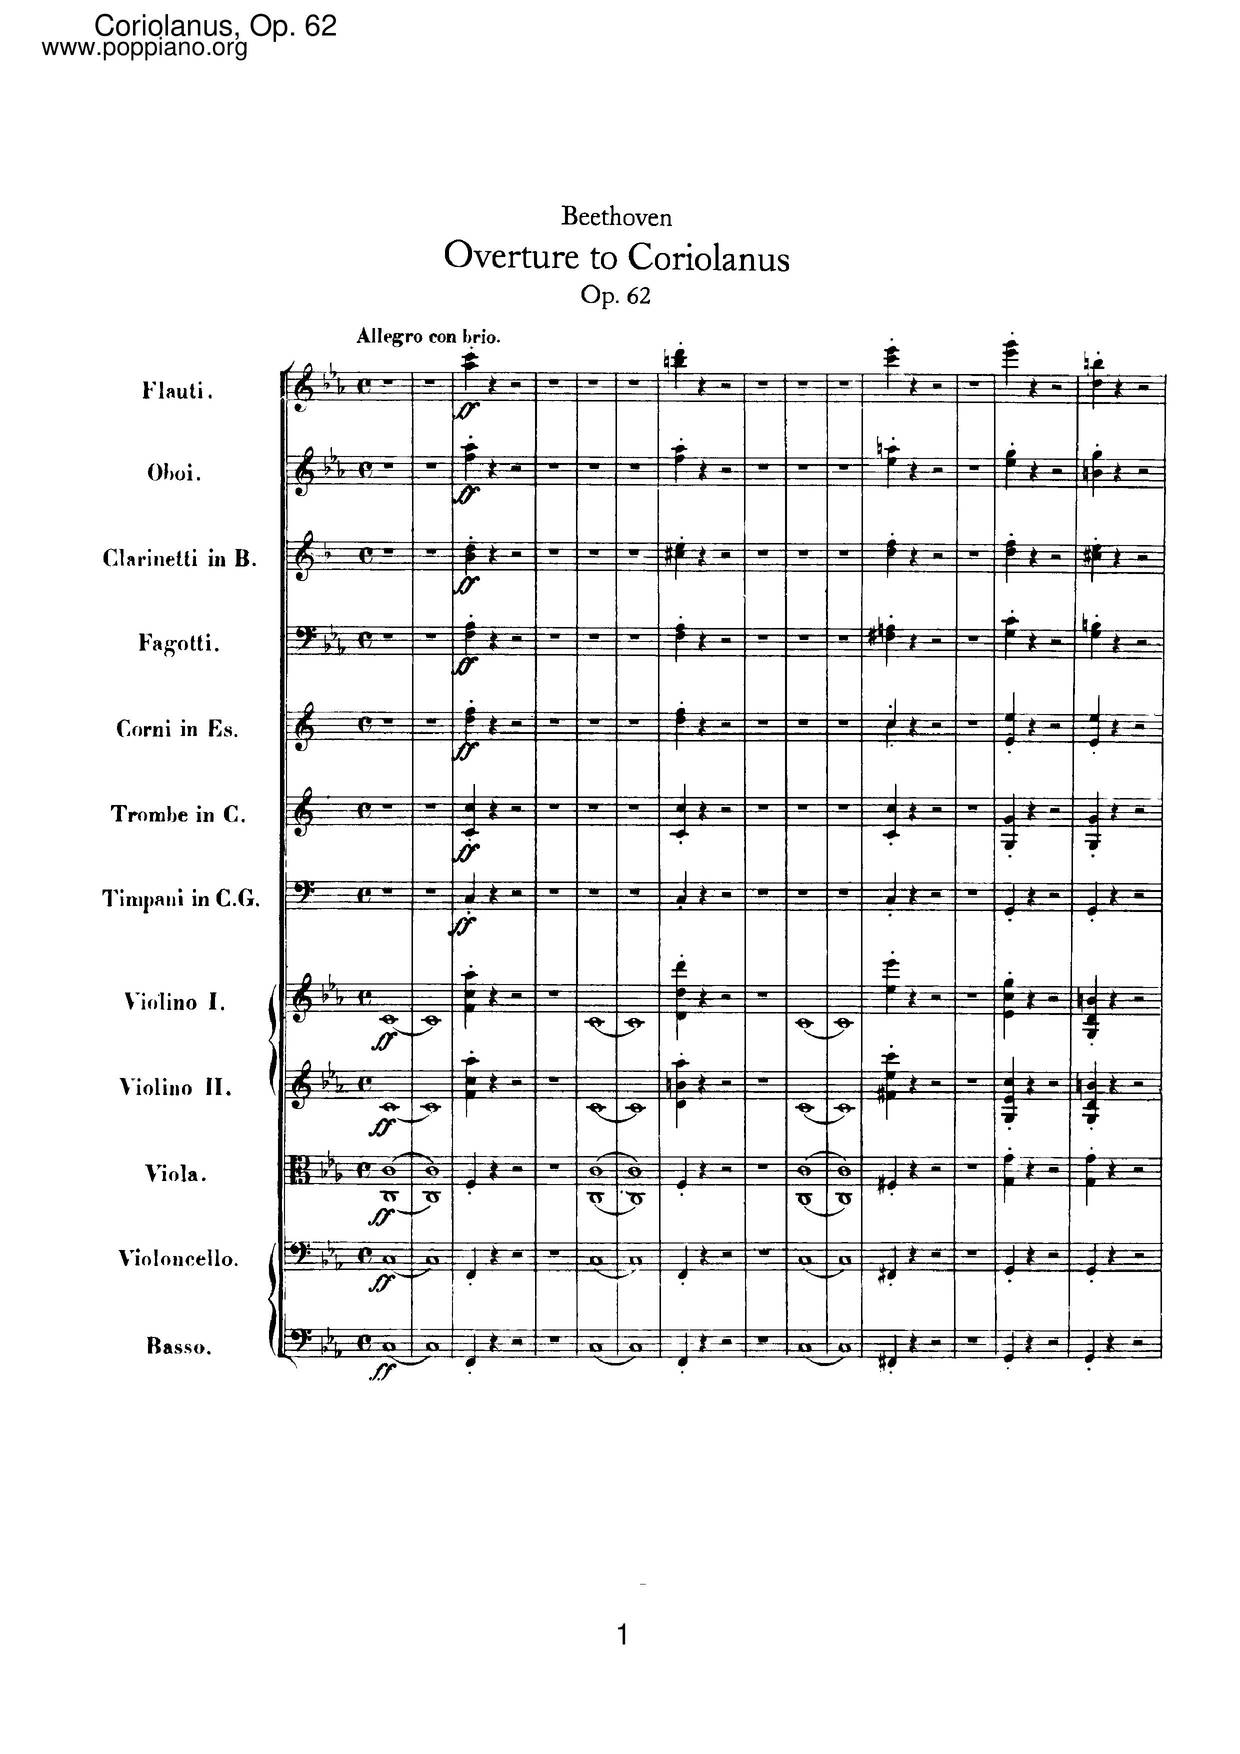 Coriolan Overture, Op. 62 Score